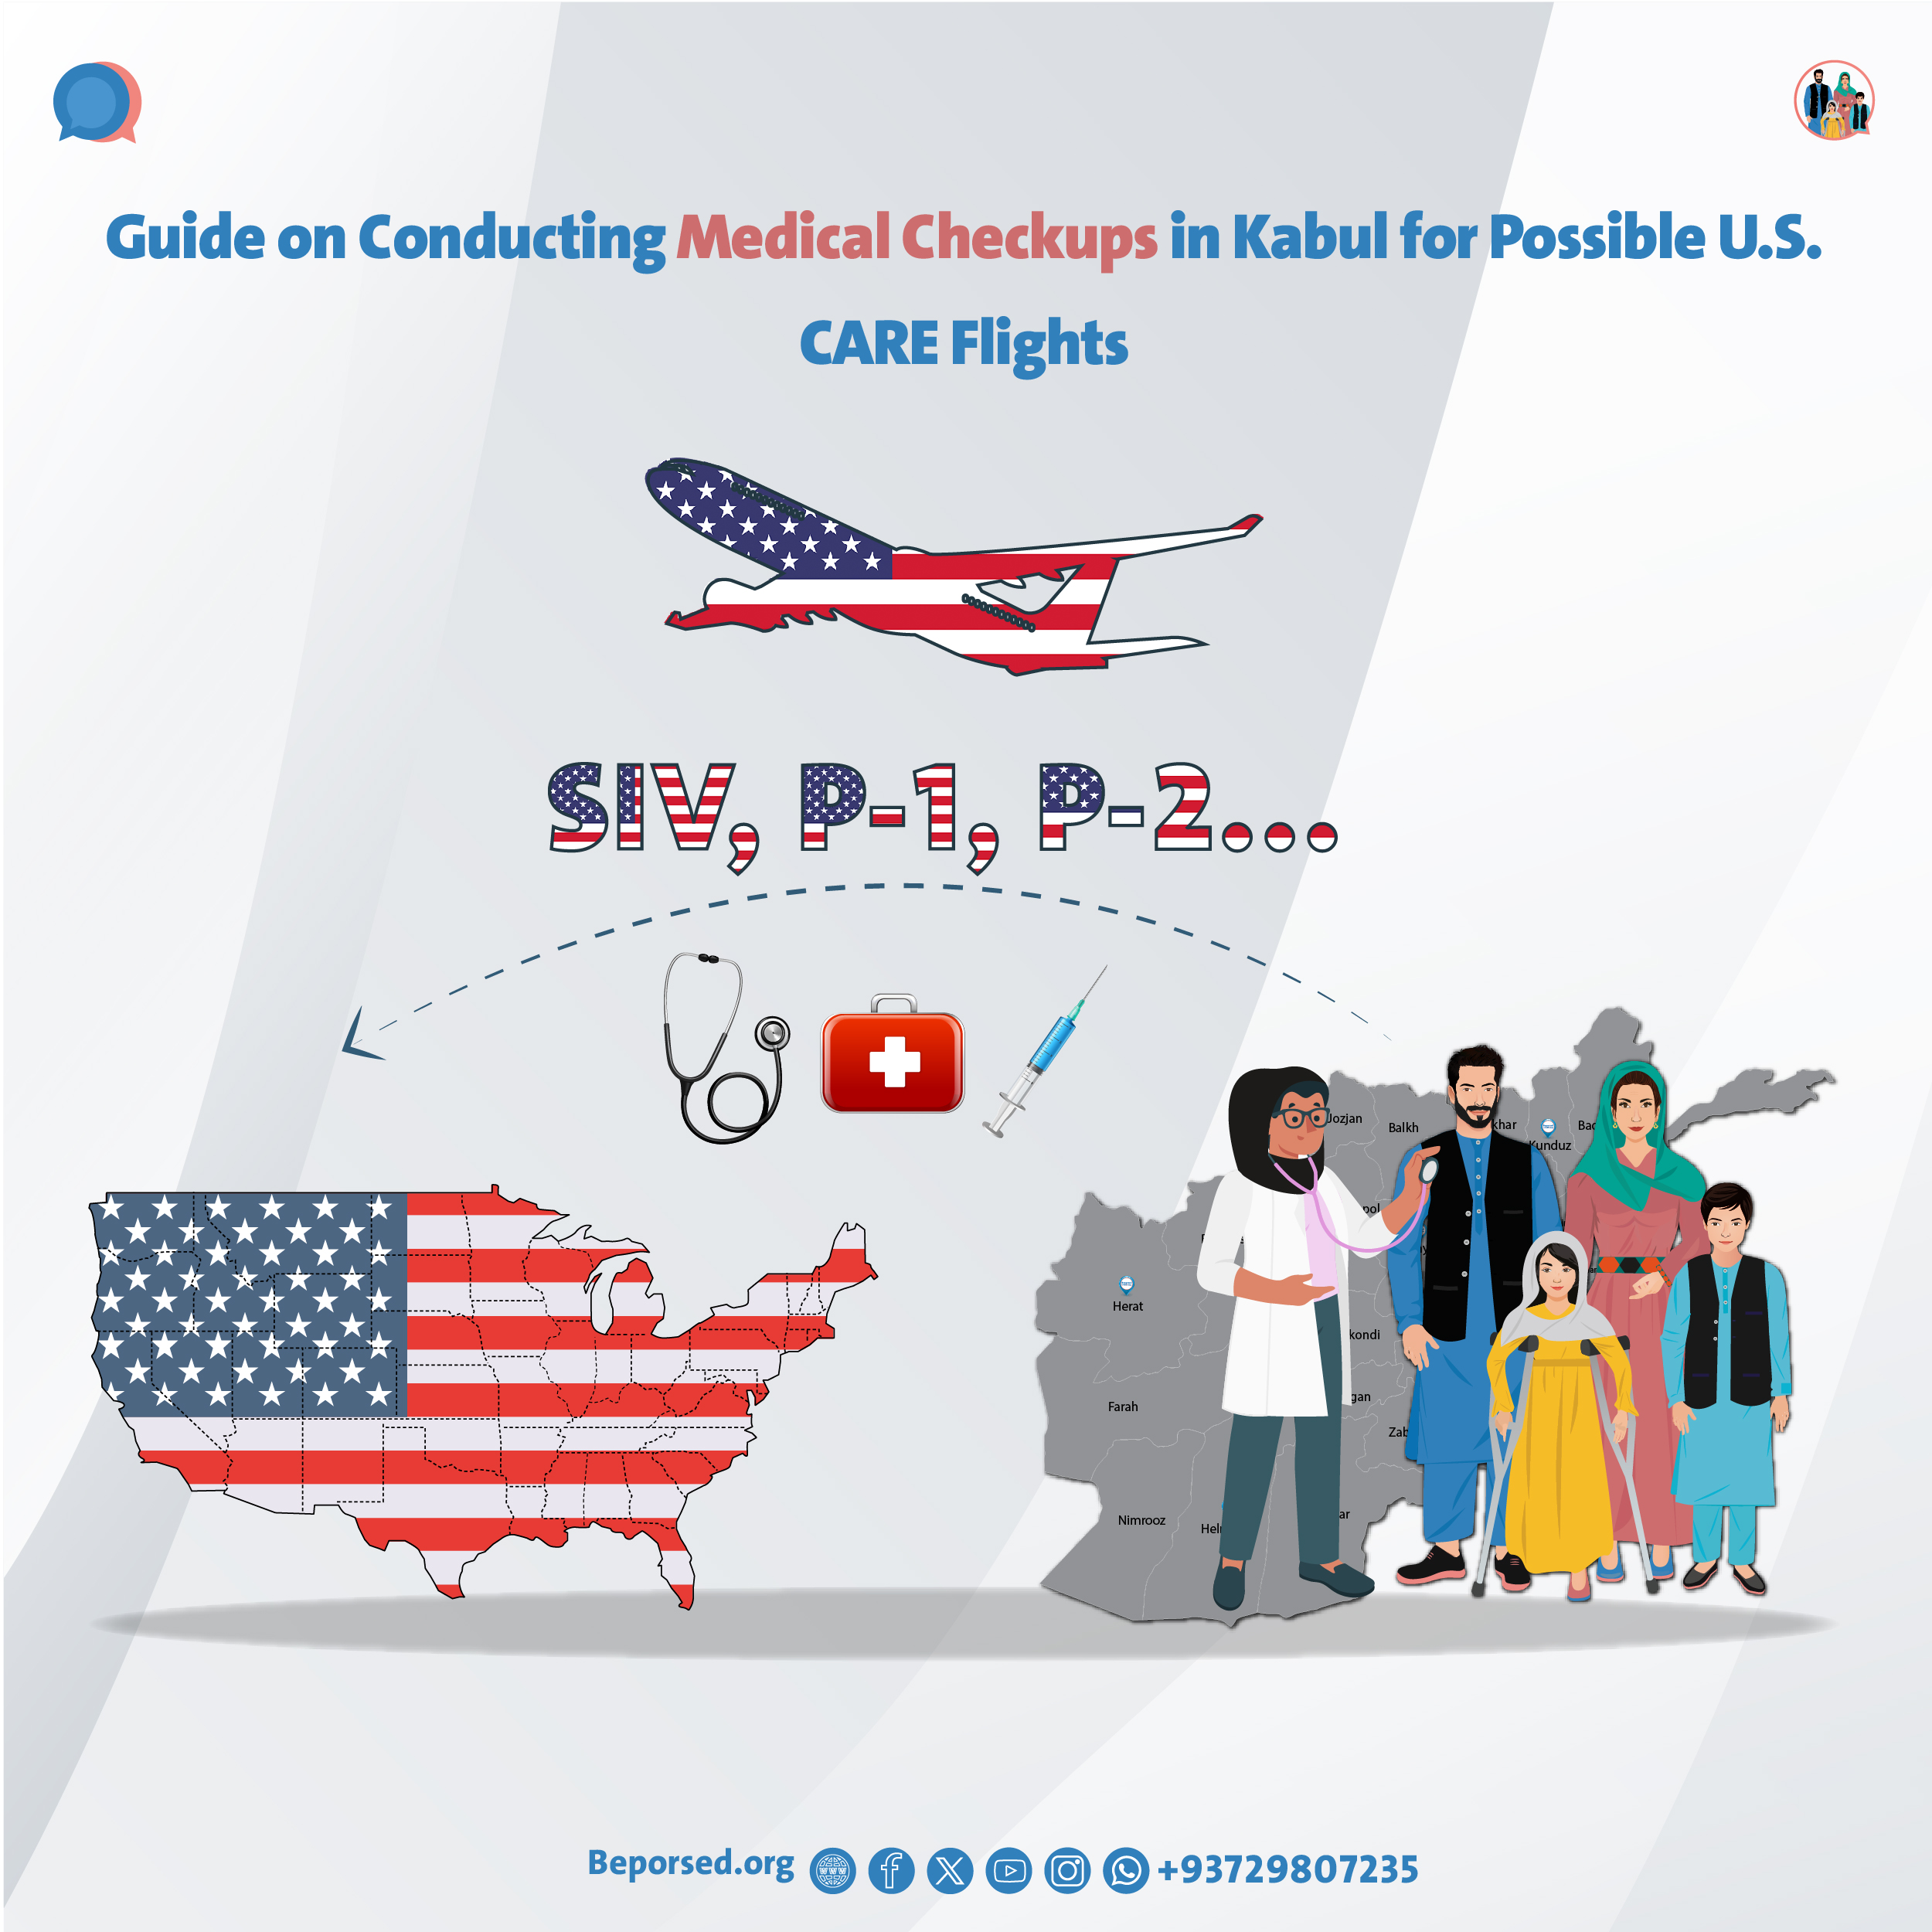 رهنمود در رابطه به انجام معاینات صحی (Medical Checkup) در کابل برای پروازهای احتمالی بخش CARE آمریکا-03.jpg